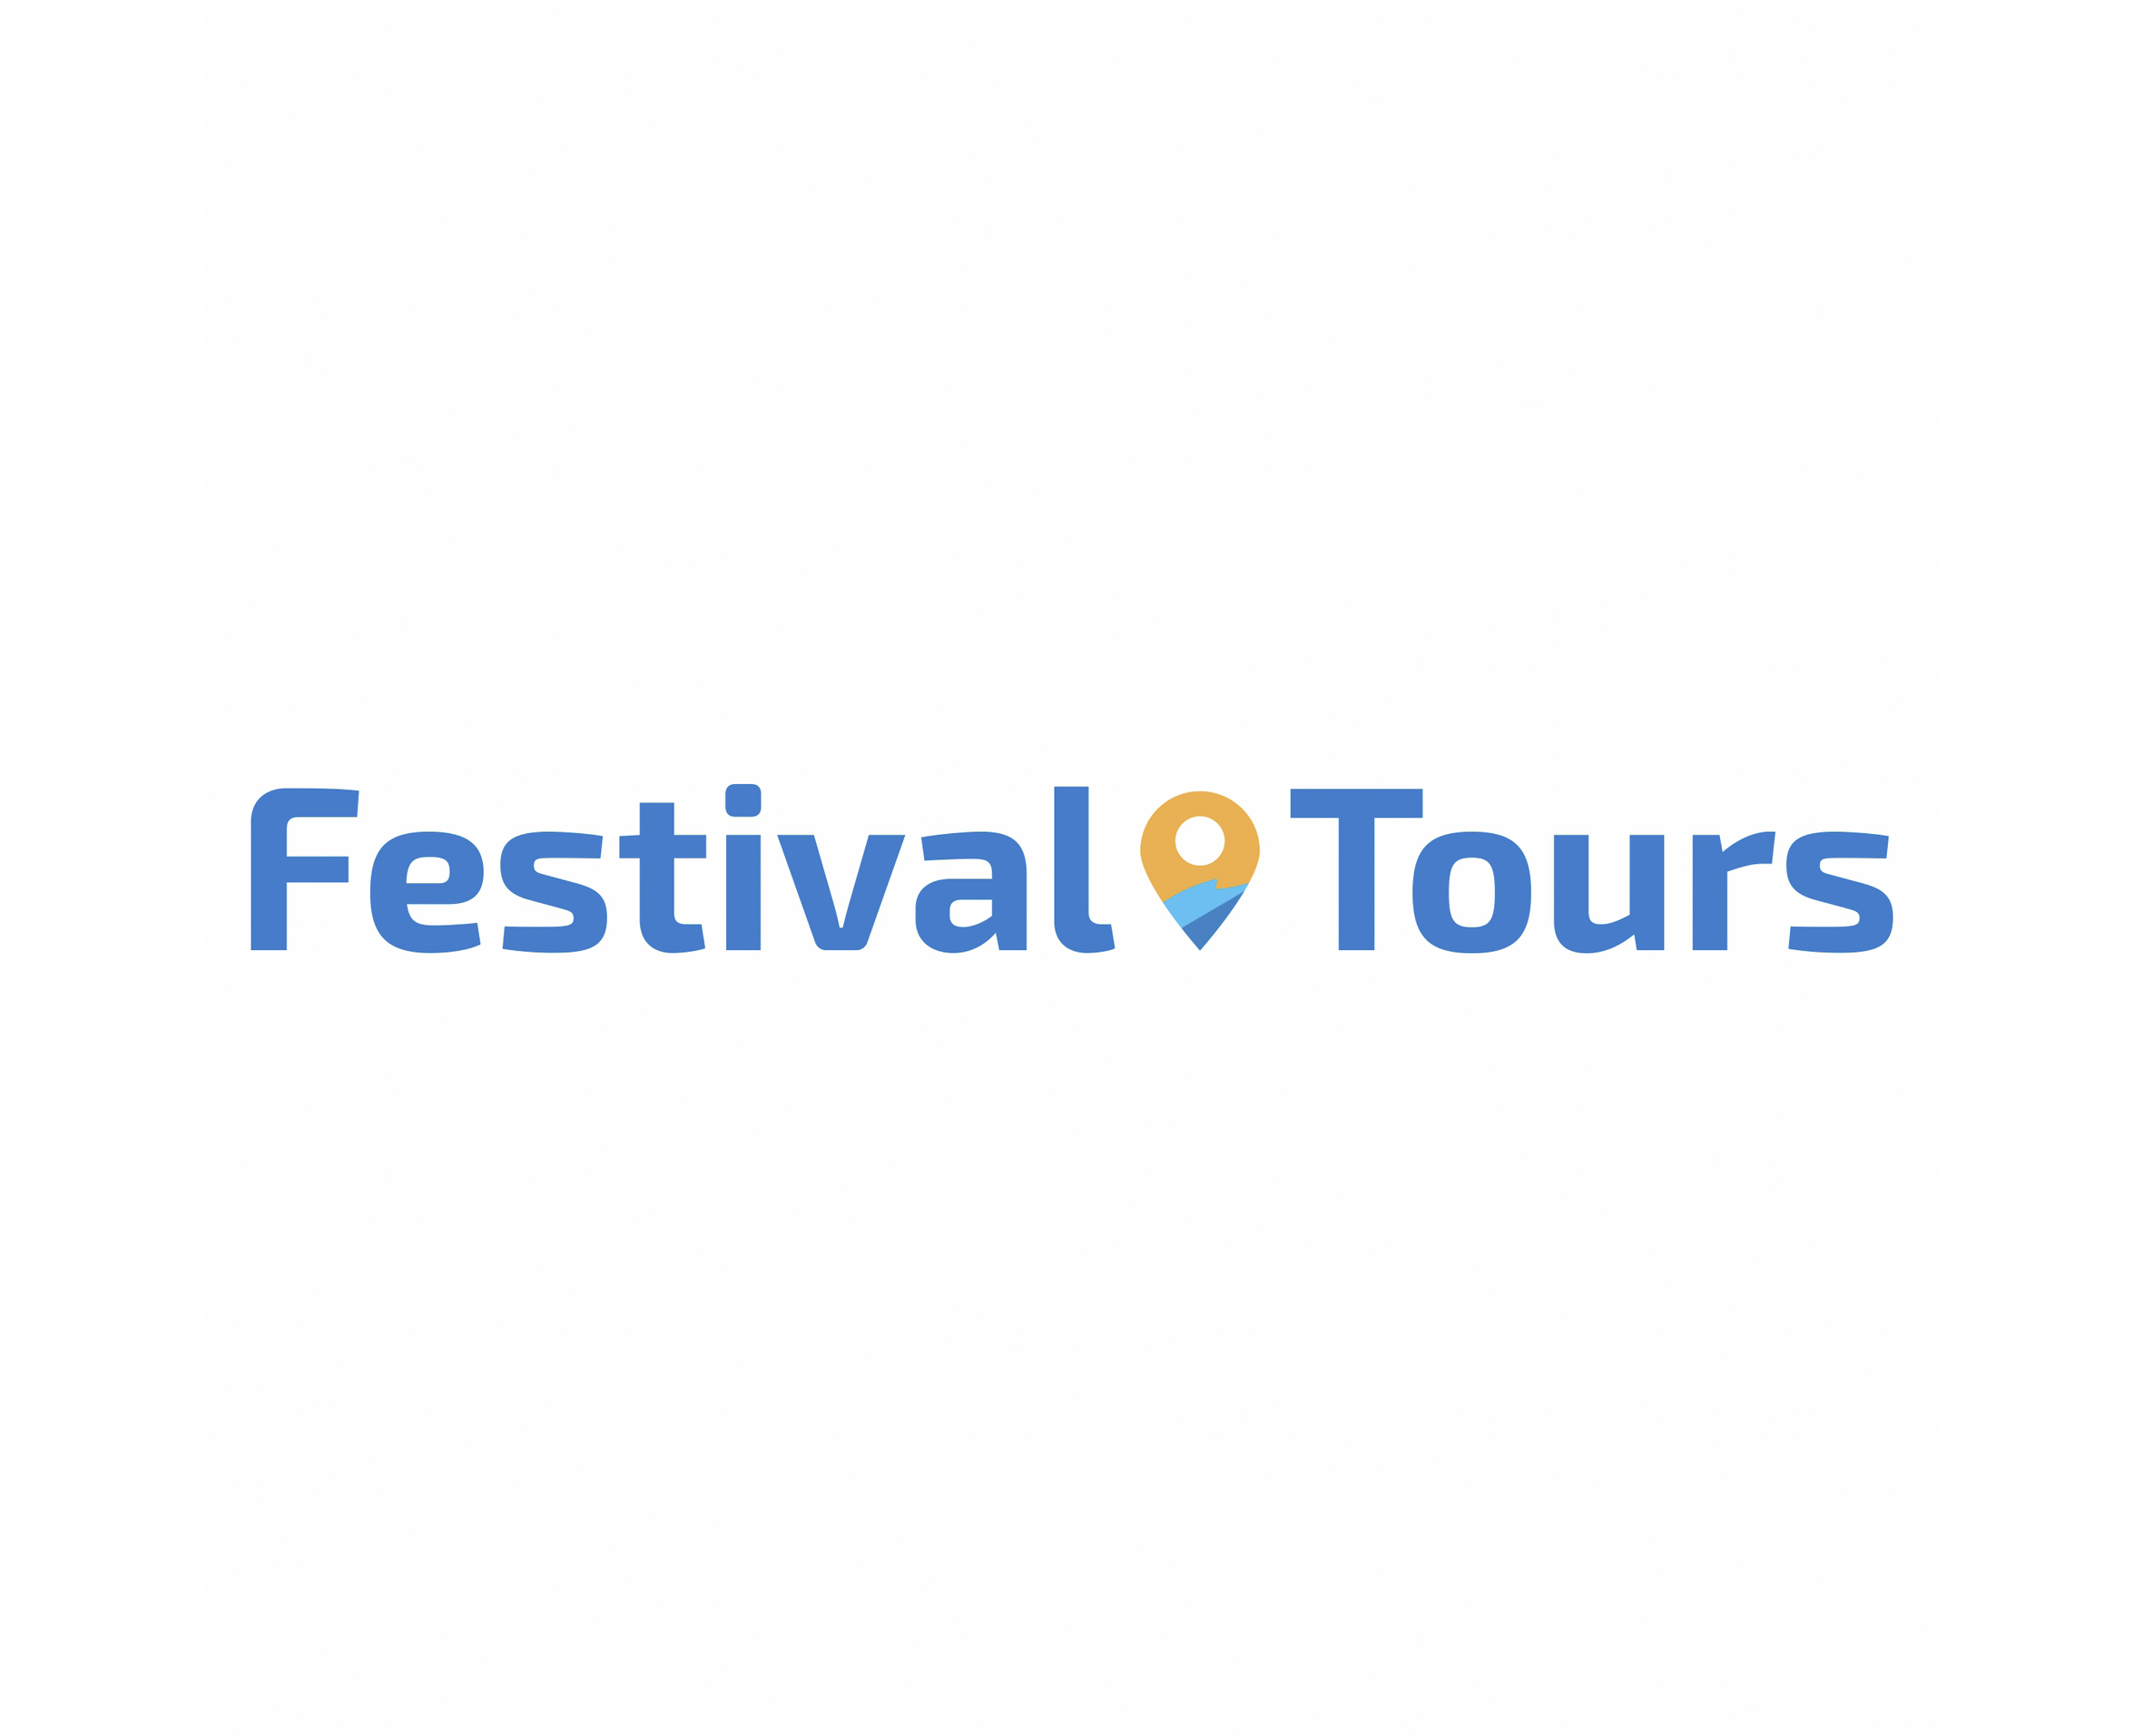 FESTIVAL TOURS